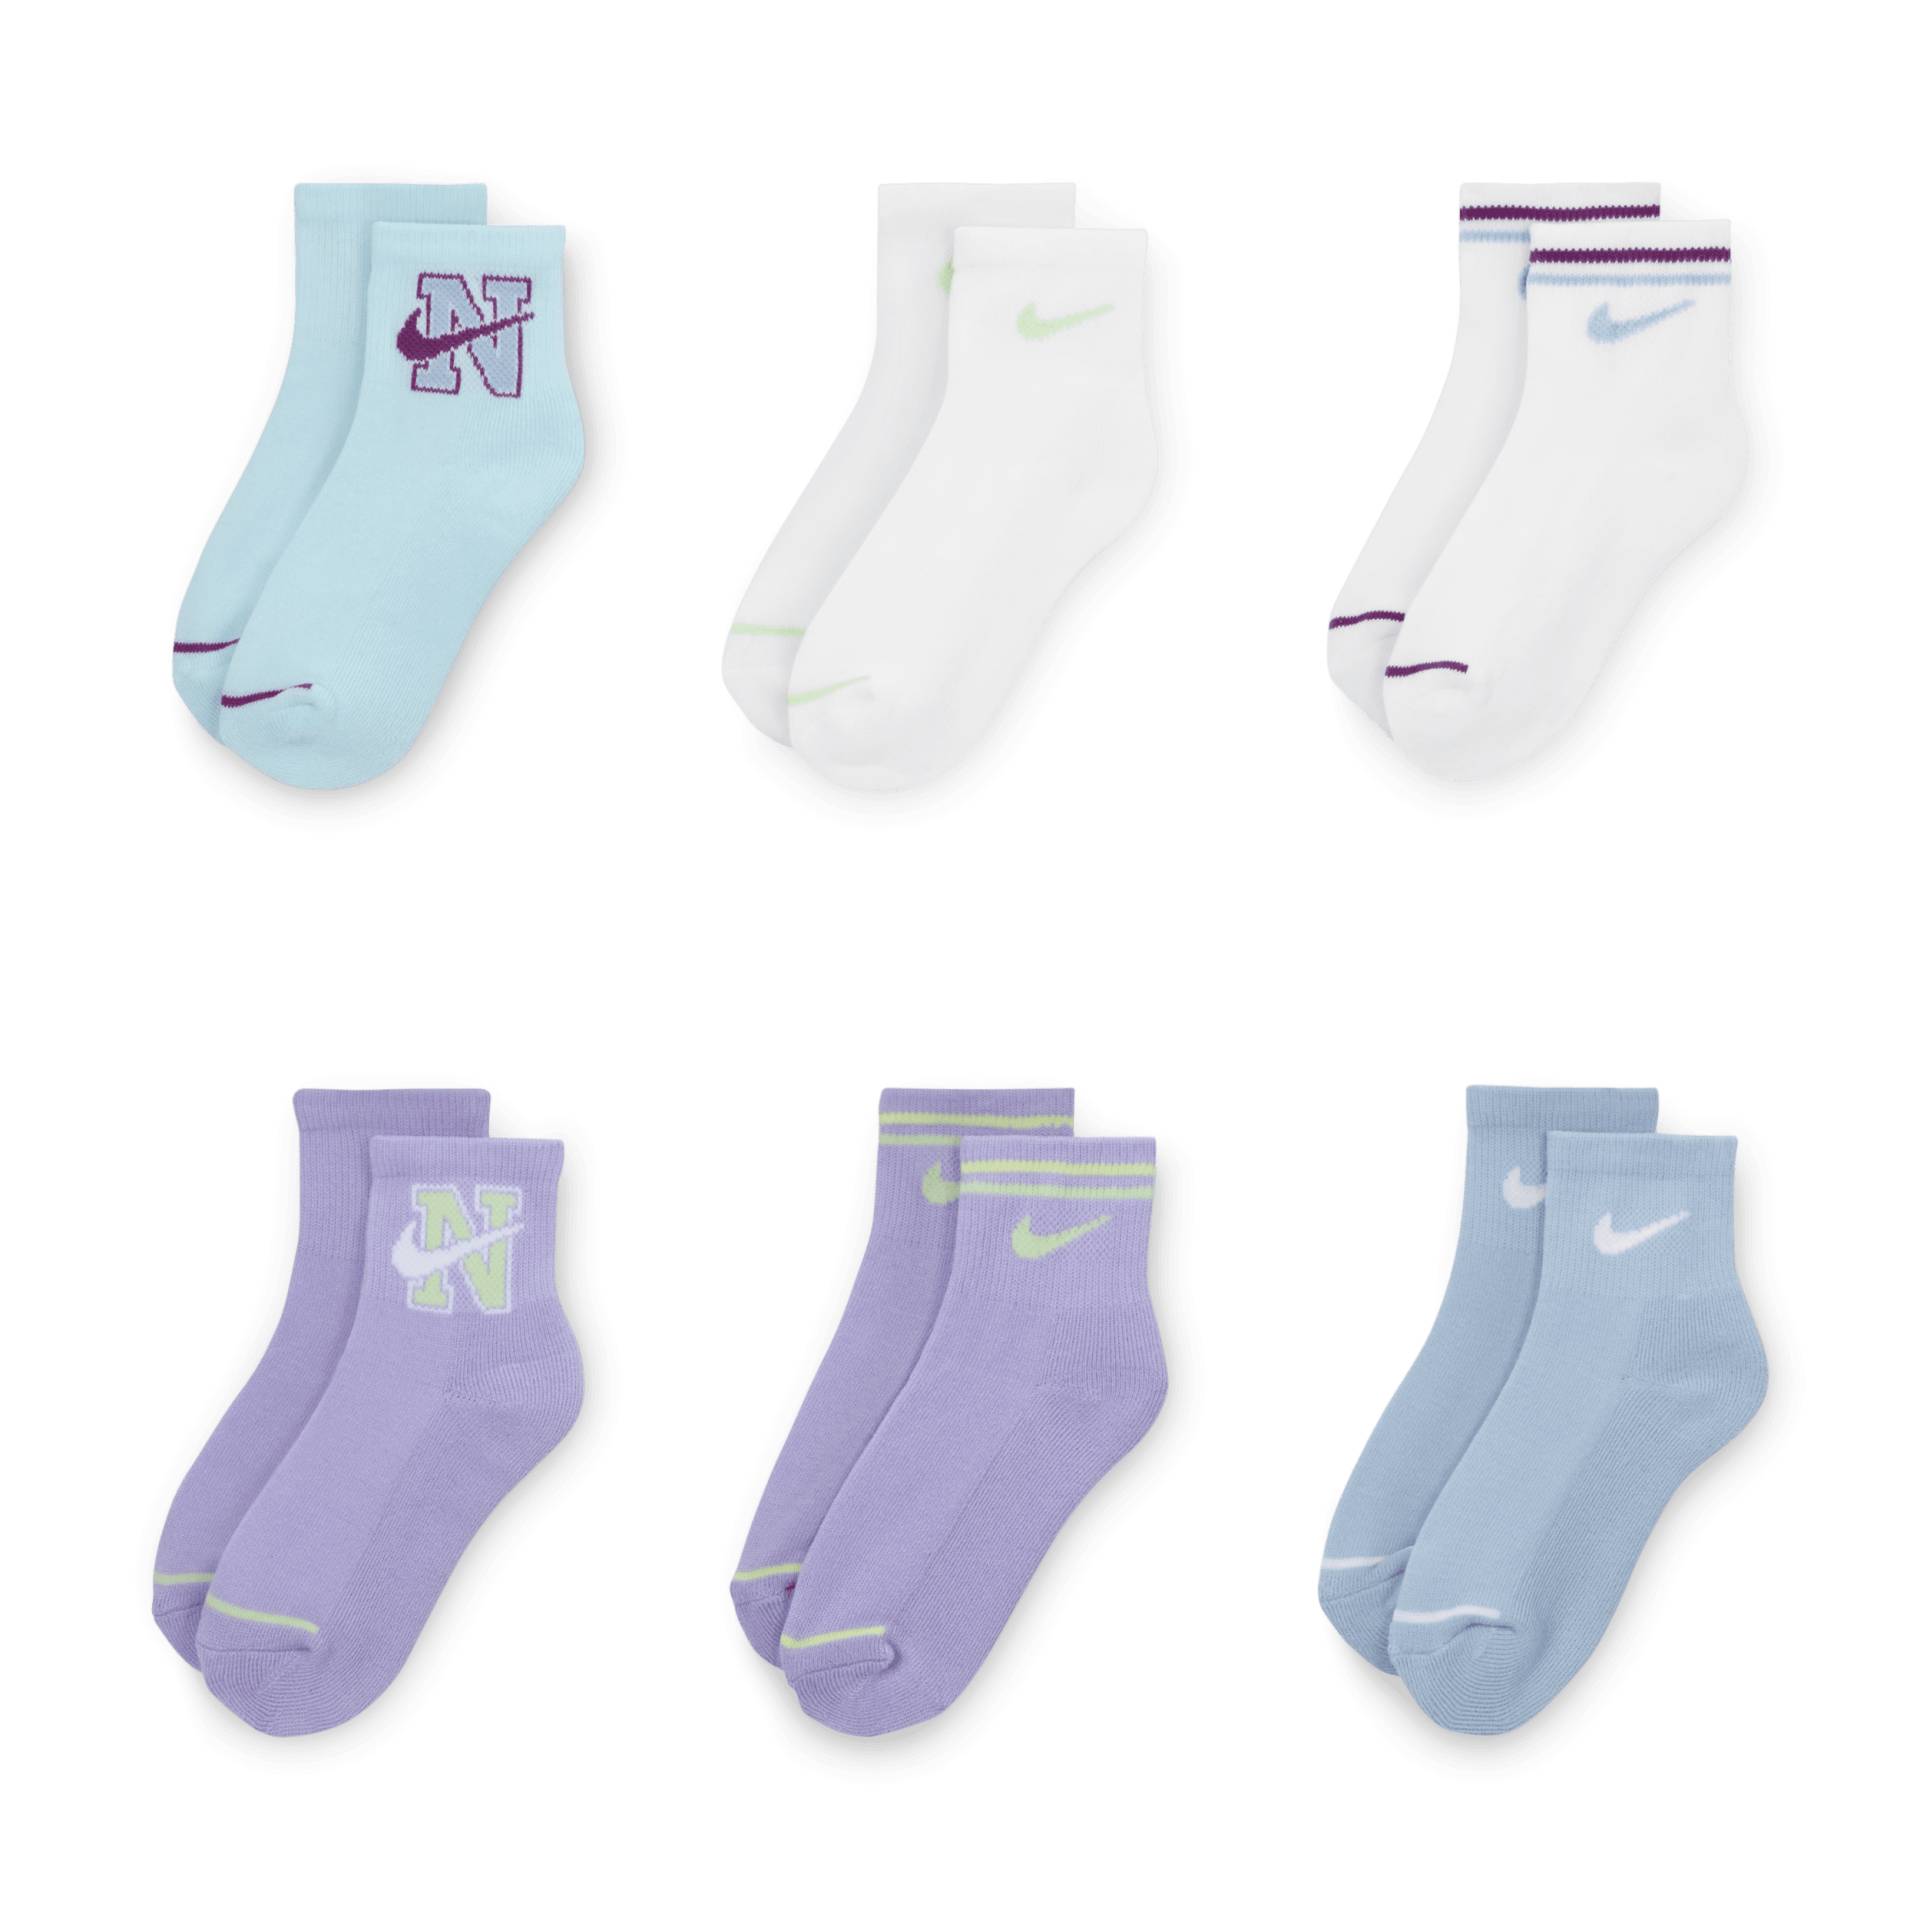 Nike Prep in Your Step Socken in Viertellänge für jüngere Kinder (6 Paar) - Blau von Nike